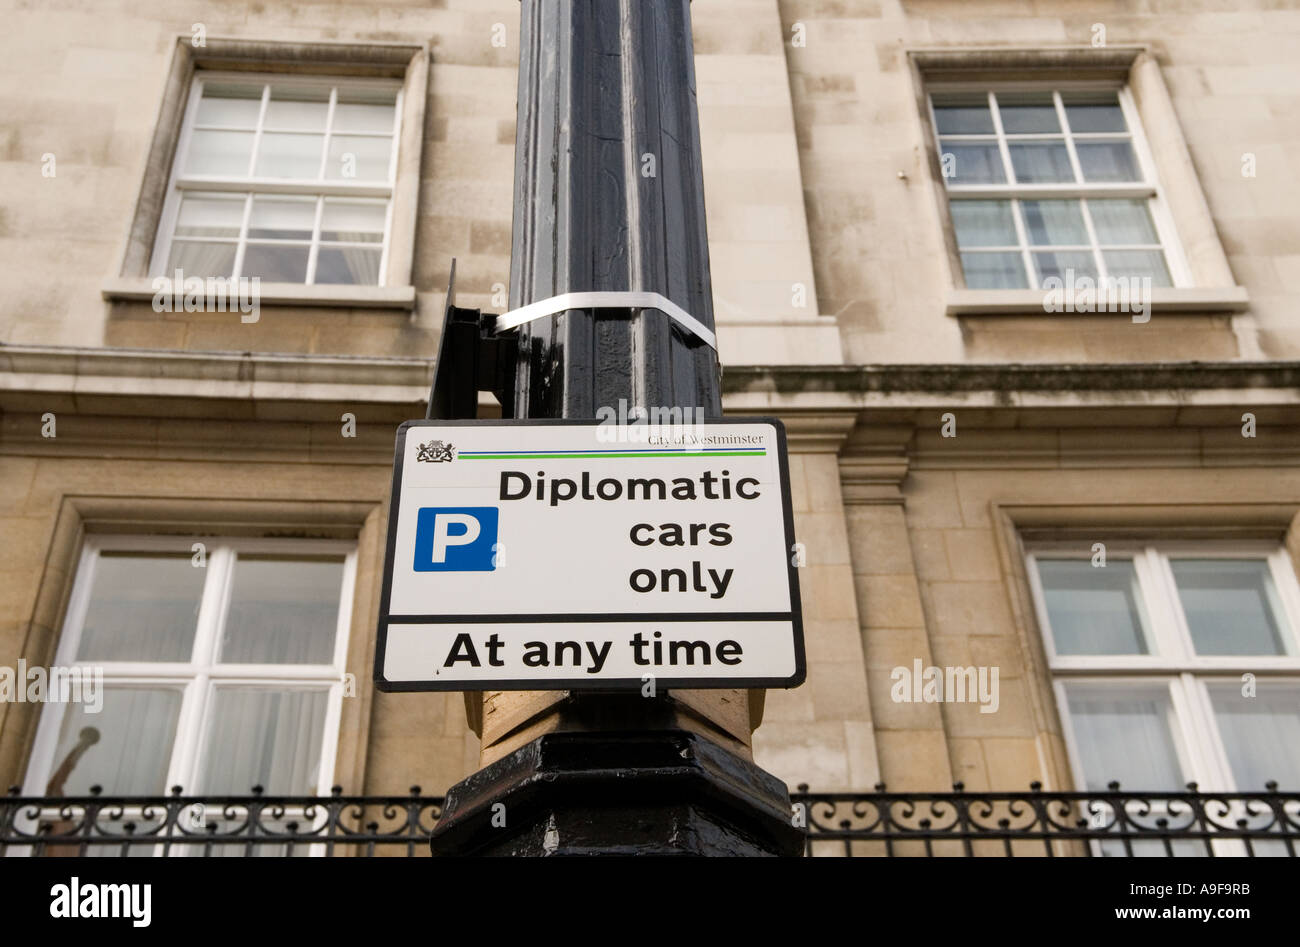 Un panneau fixé sur un lampadaire avise les conducteurs de voiture que seules les voitures diplomatiques sont autorisés à stationner ici à tout moment. Banque D'Images